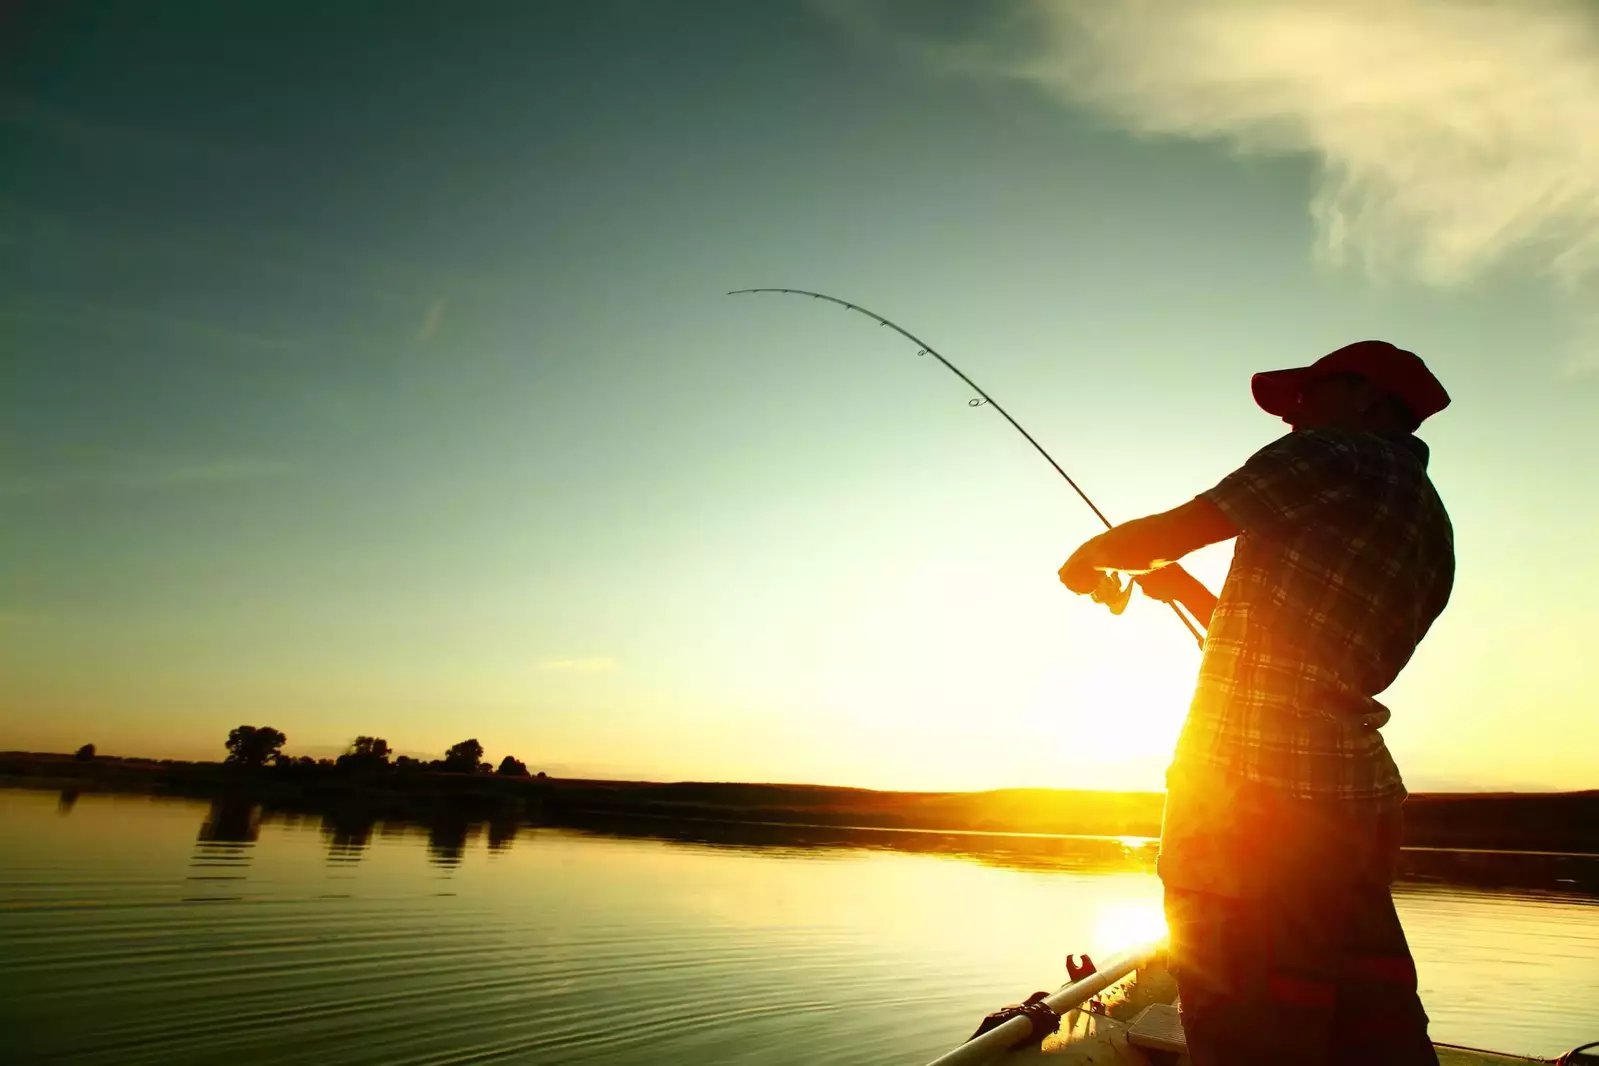 Man fishing on a lake at sunset